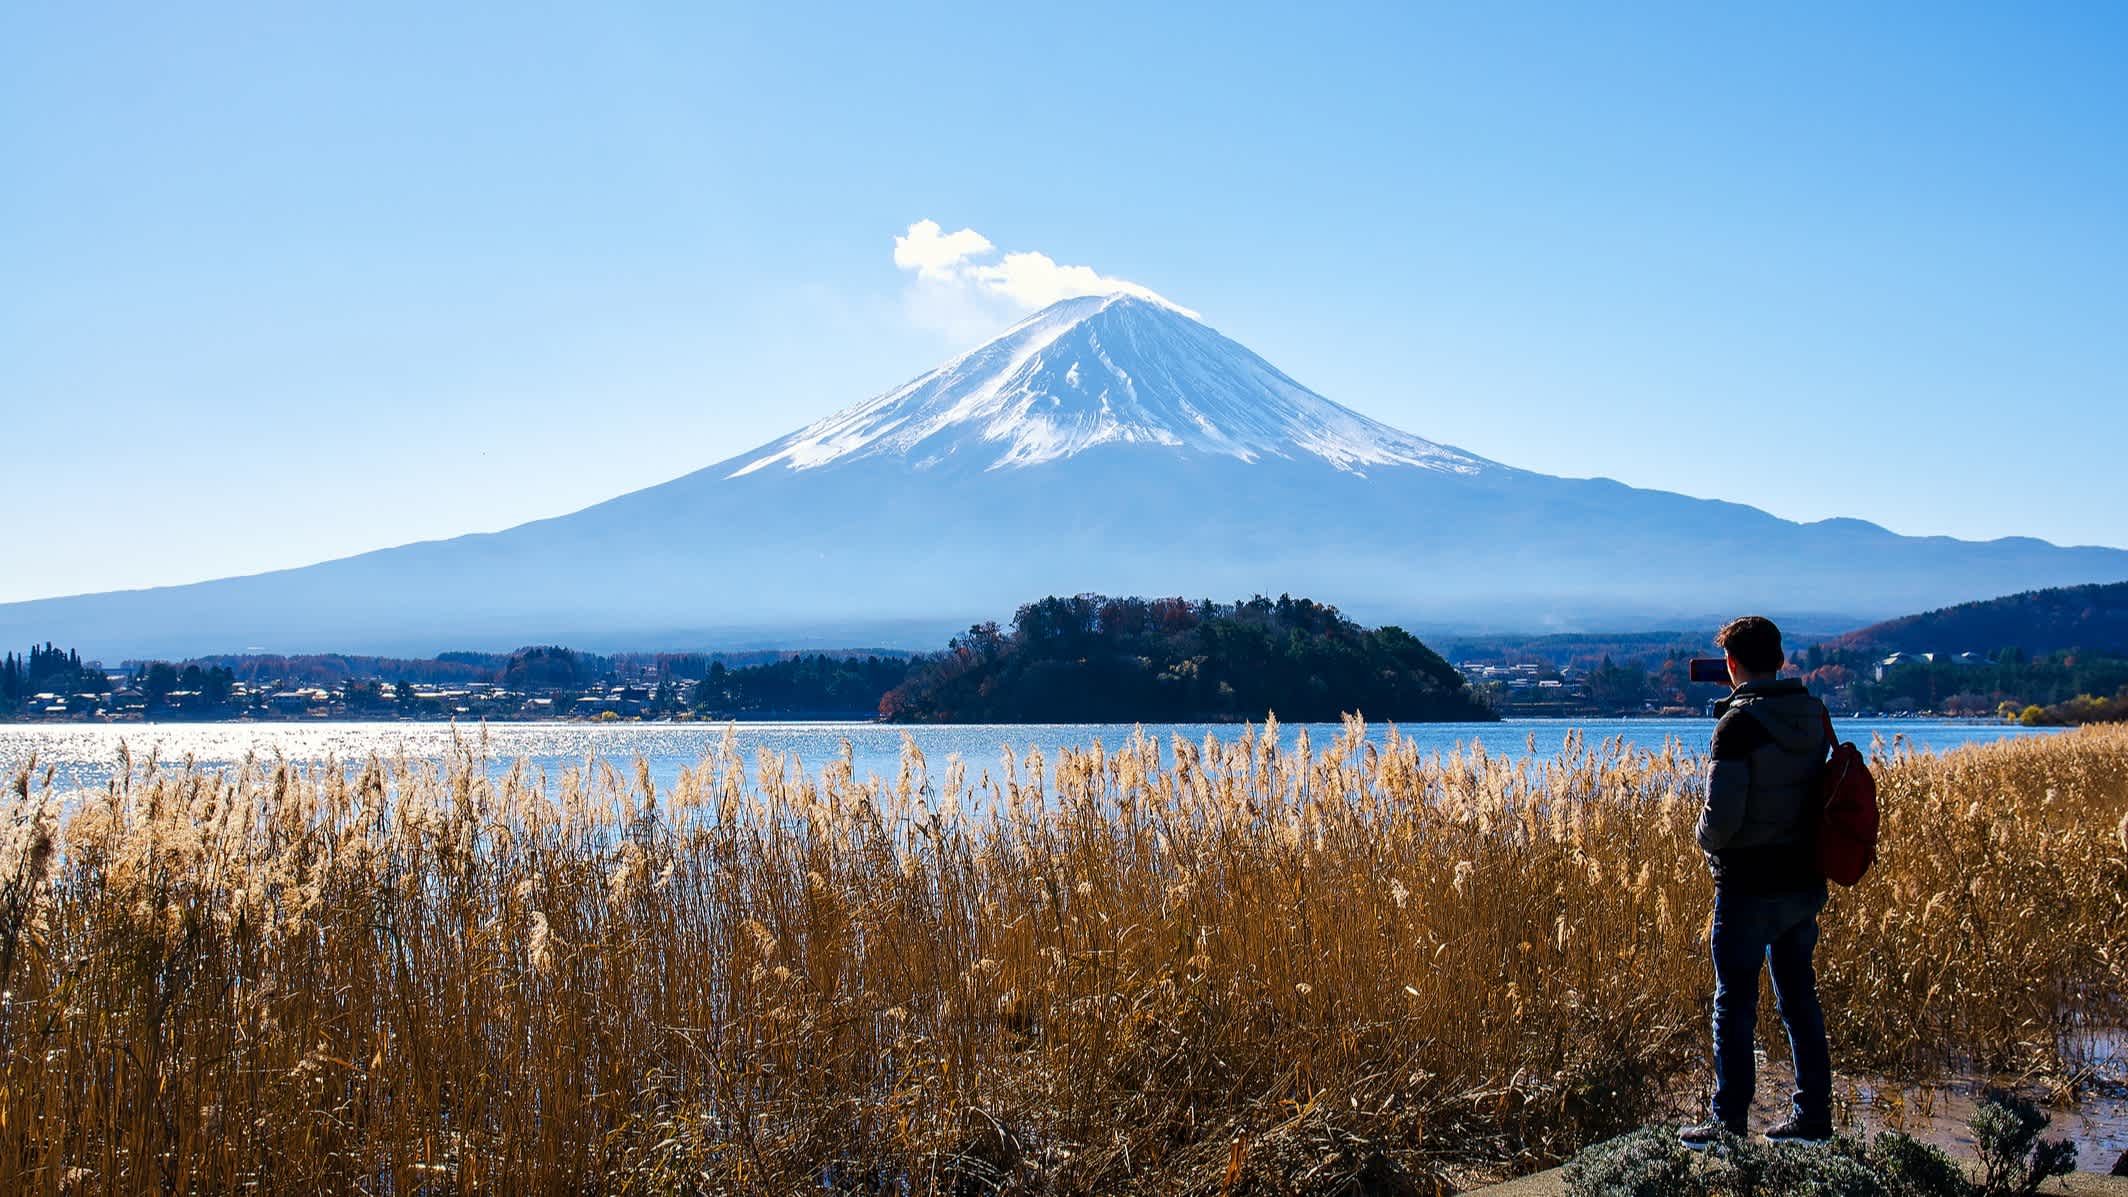 Un homme au milieu de la nature magnifique du Mont Fuji, Yamanashi, Japon.

